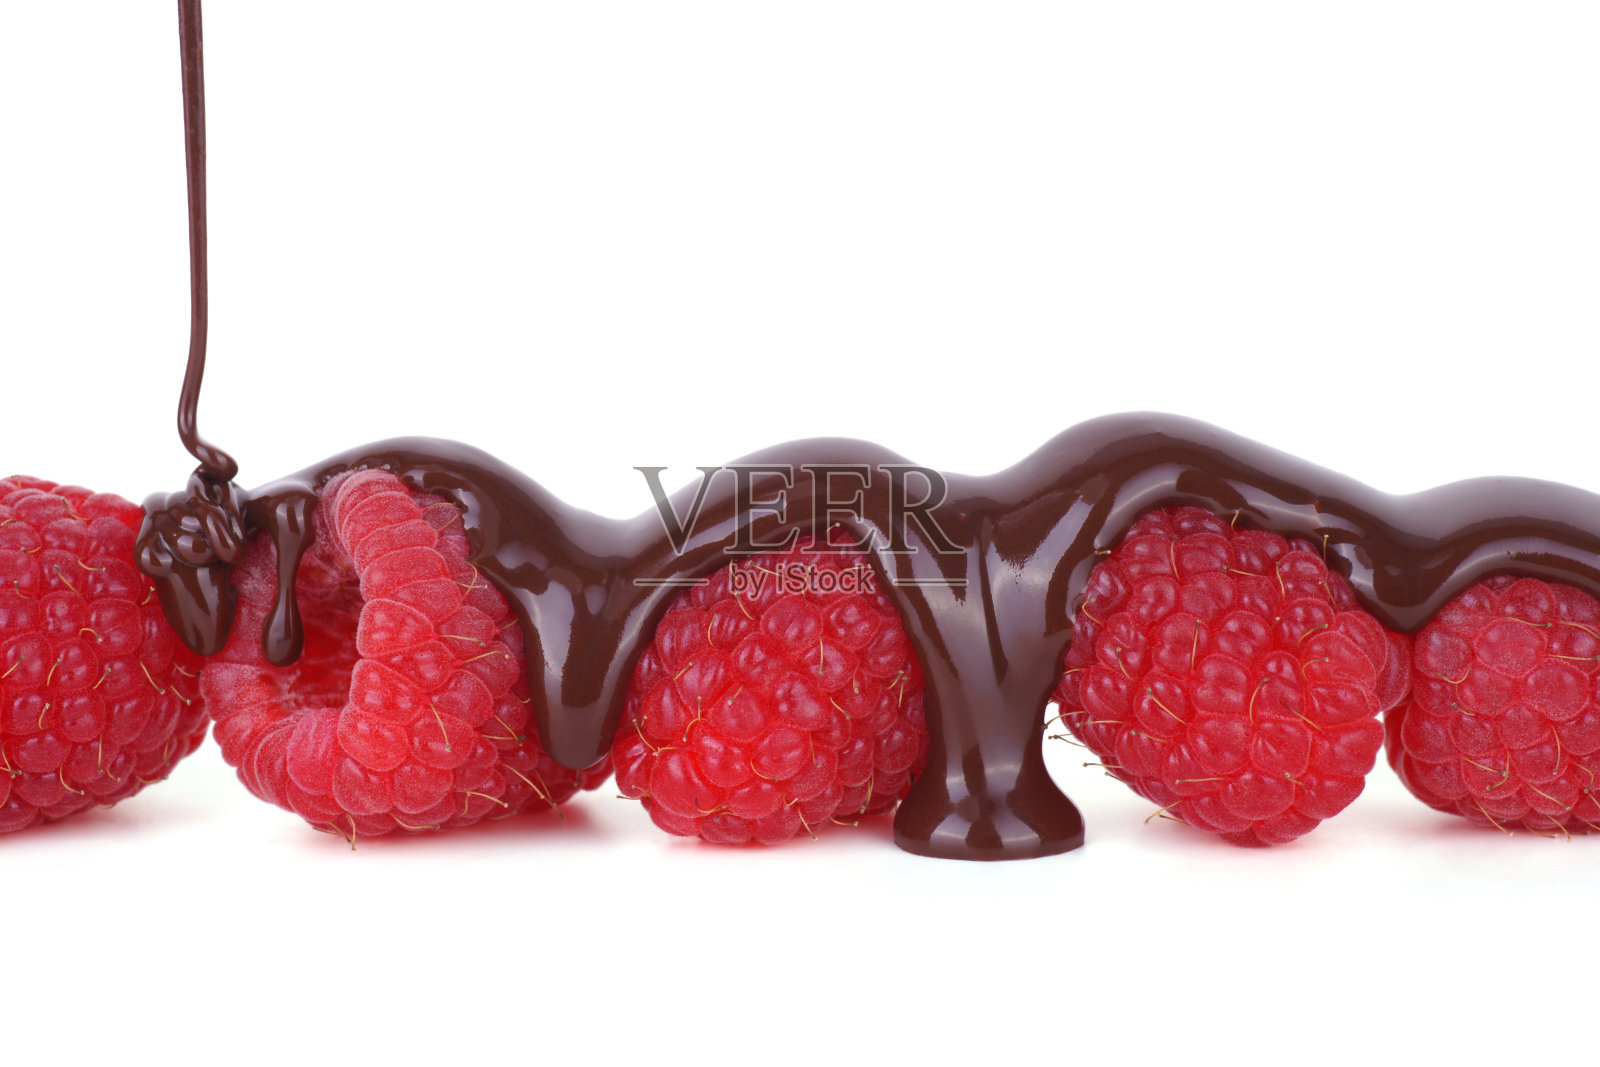 融化的巧克力浇在树莓上照片摄影图片